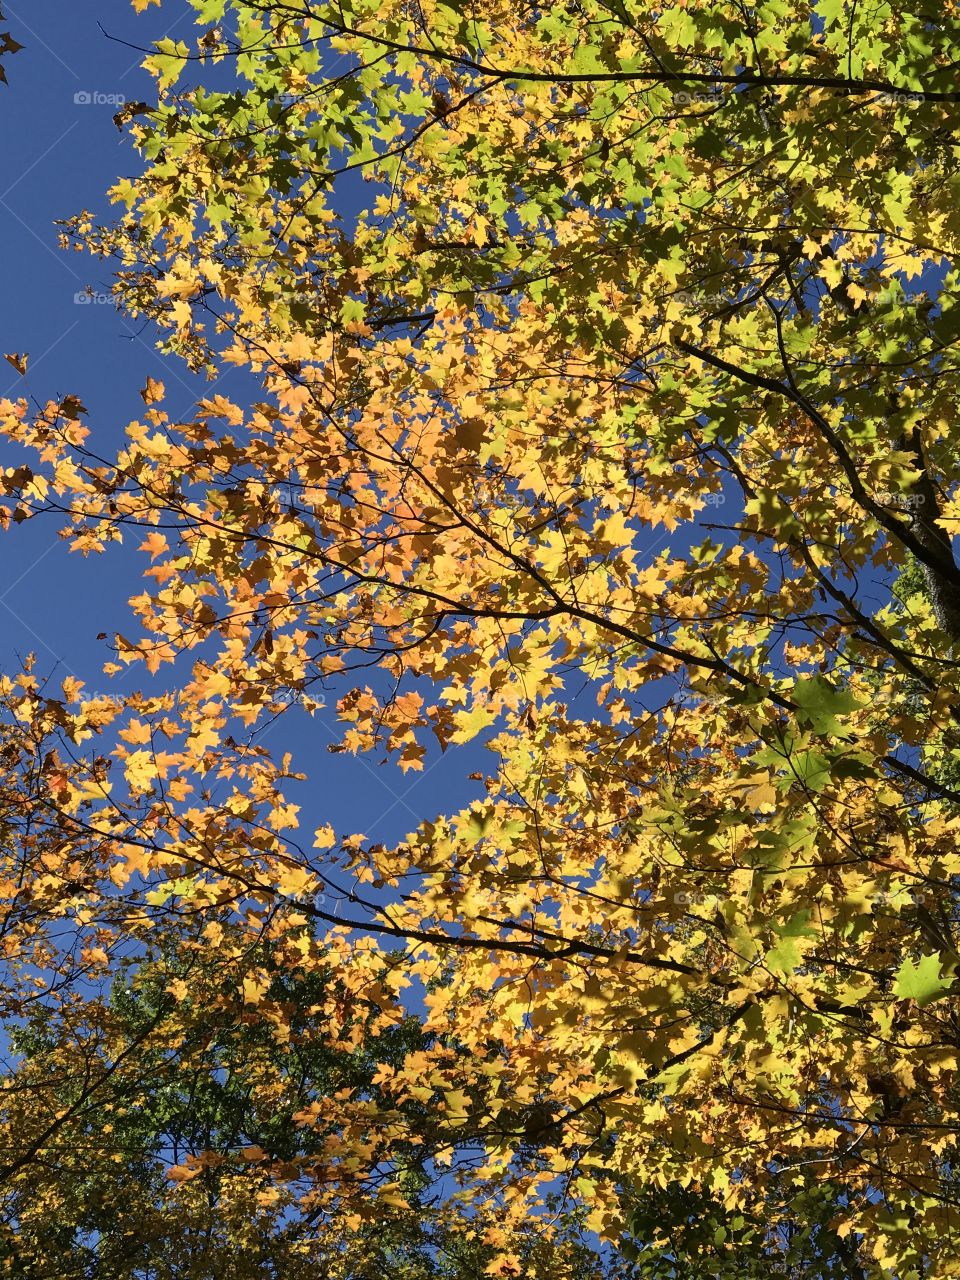 Fall
